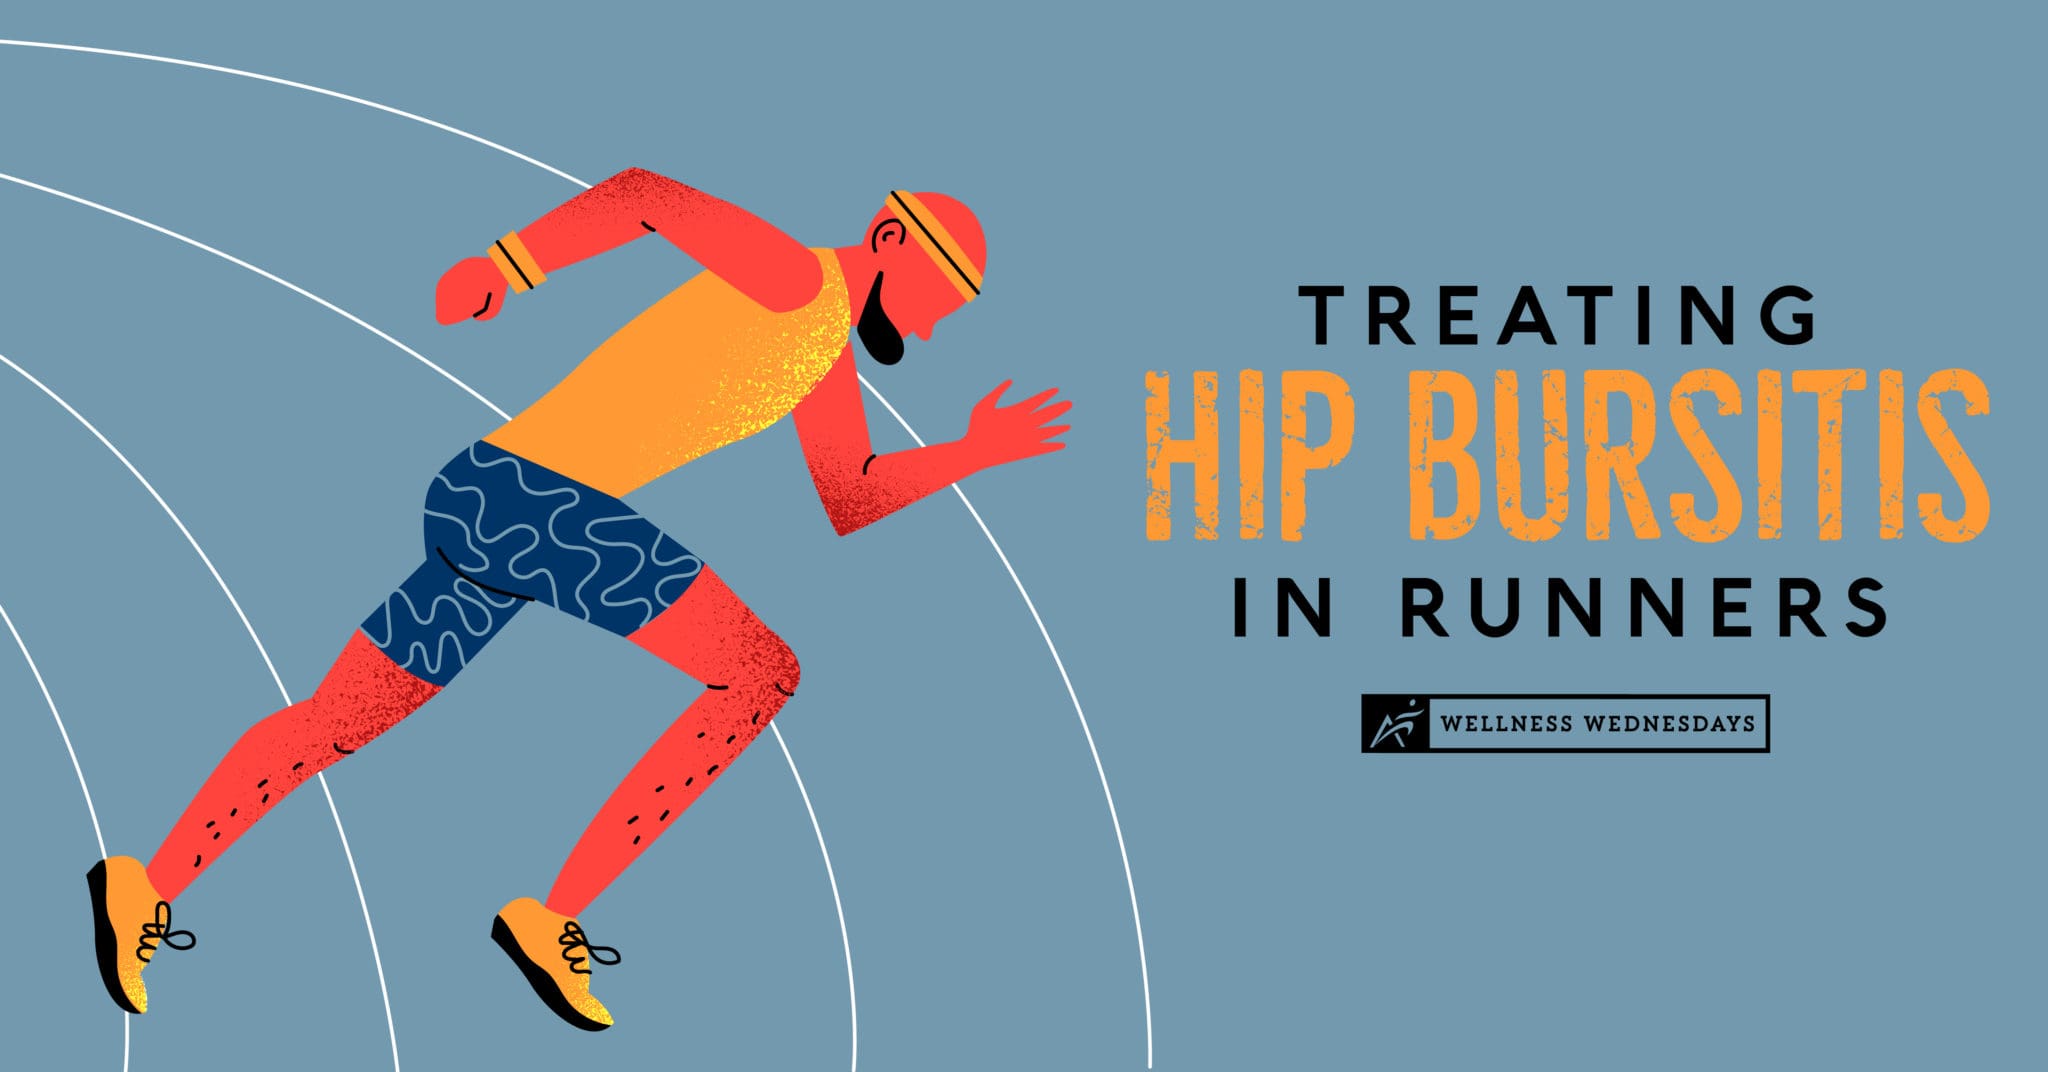 https://www.airrosti.com/wp-content/uploads/2021/07/2021_07_-Treating-Hip-Bursitis-in-Runners-_360721-01-scaled.jpg